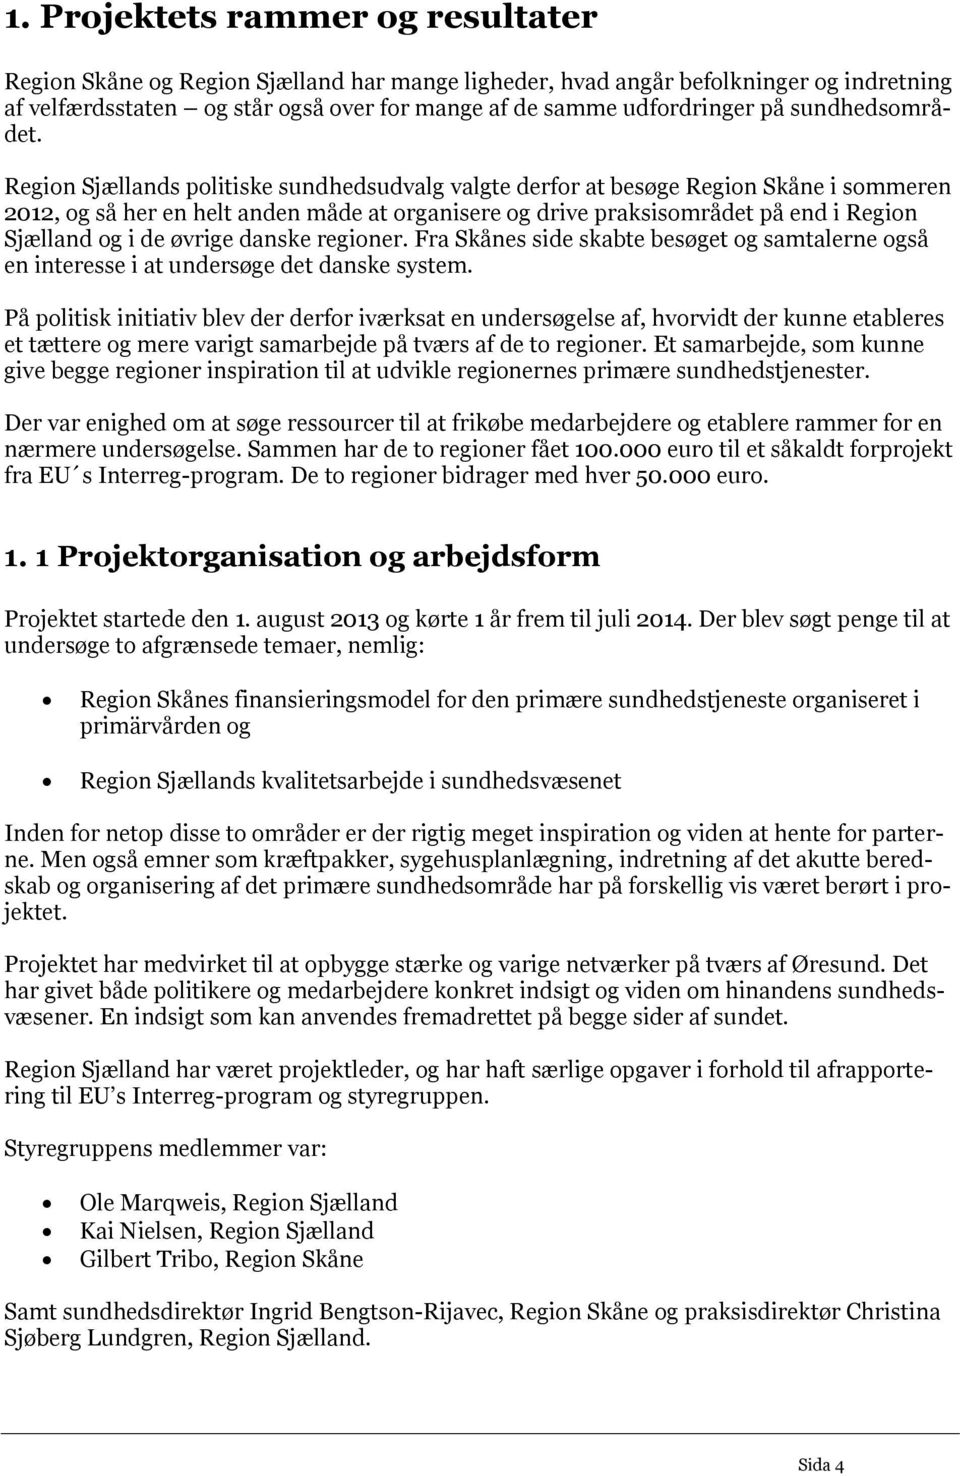 Region Sjællands politiske sundhedsudvalg valgte derfor at besøge Region Skåne i sommeren 2012, og så her en helt anden måde at organisere og drive praksisområdet på end i Region Sjælland og i de